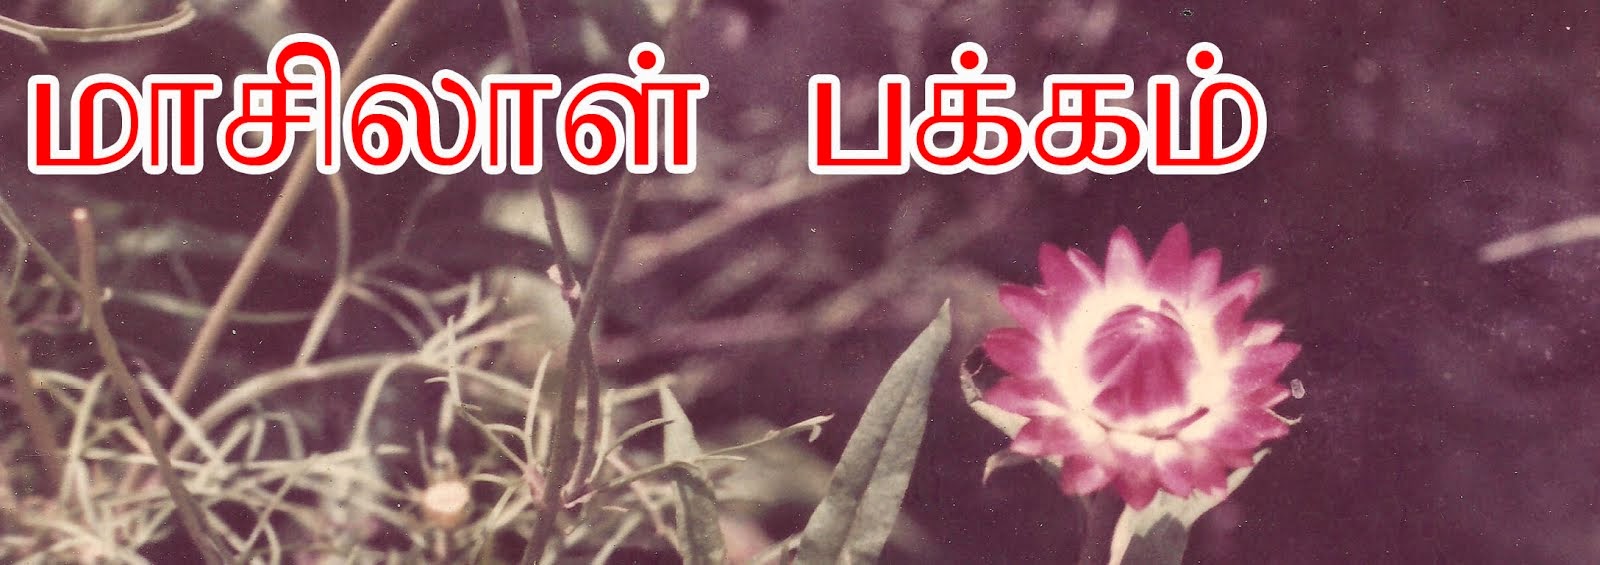 மாசிலாள் பக்கம்